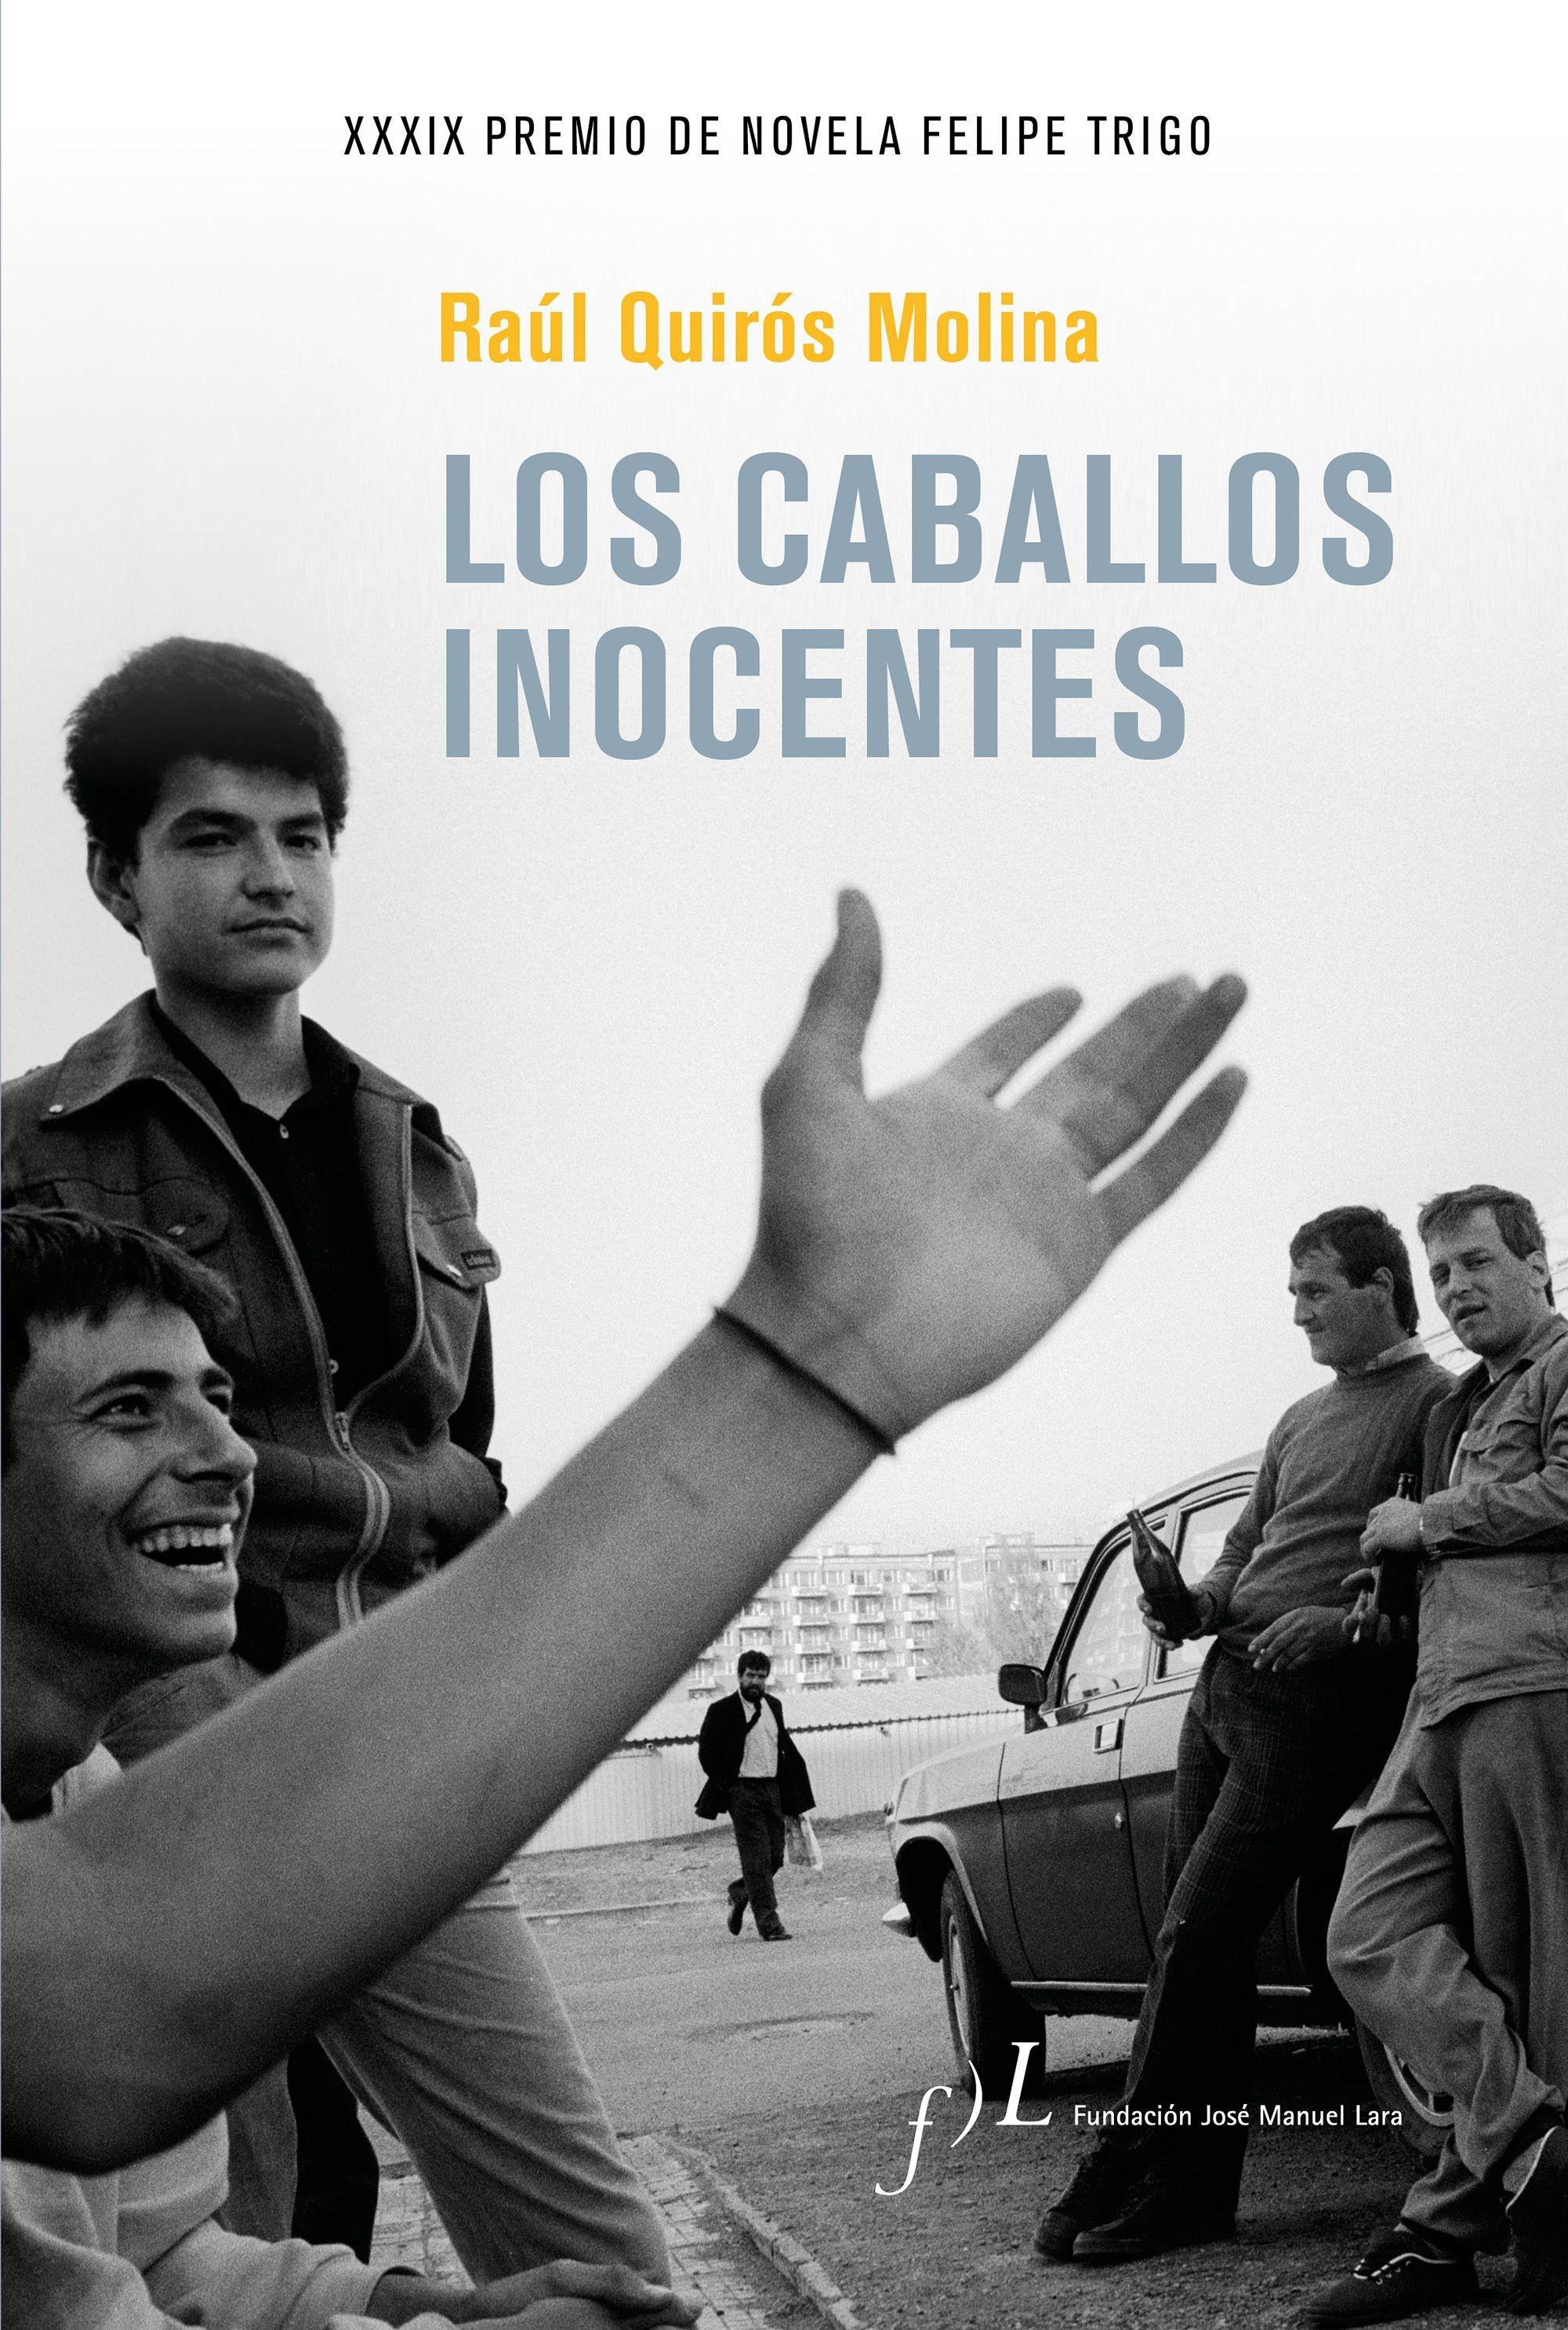 Los caballos inocentes "XXXIX Premio de Novela Felipe Trigo"